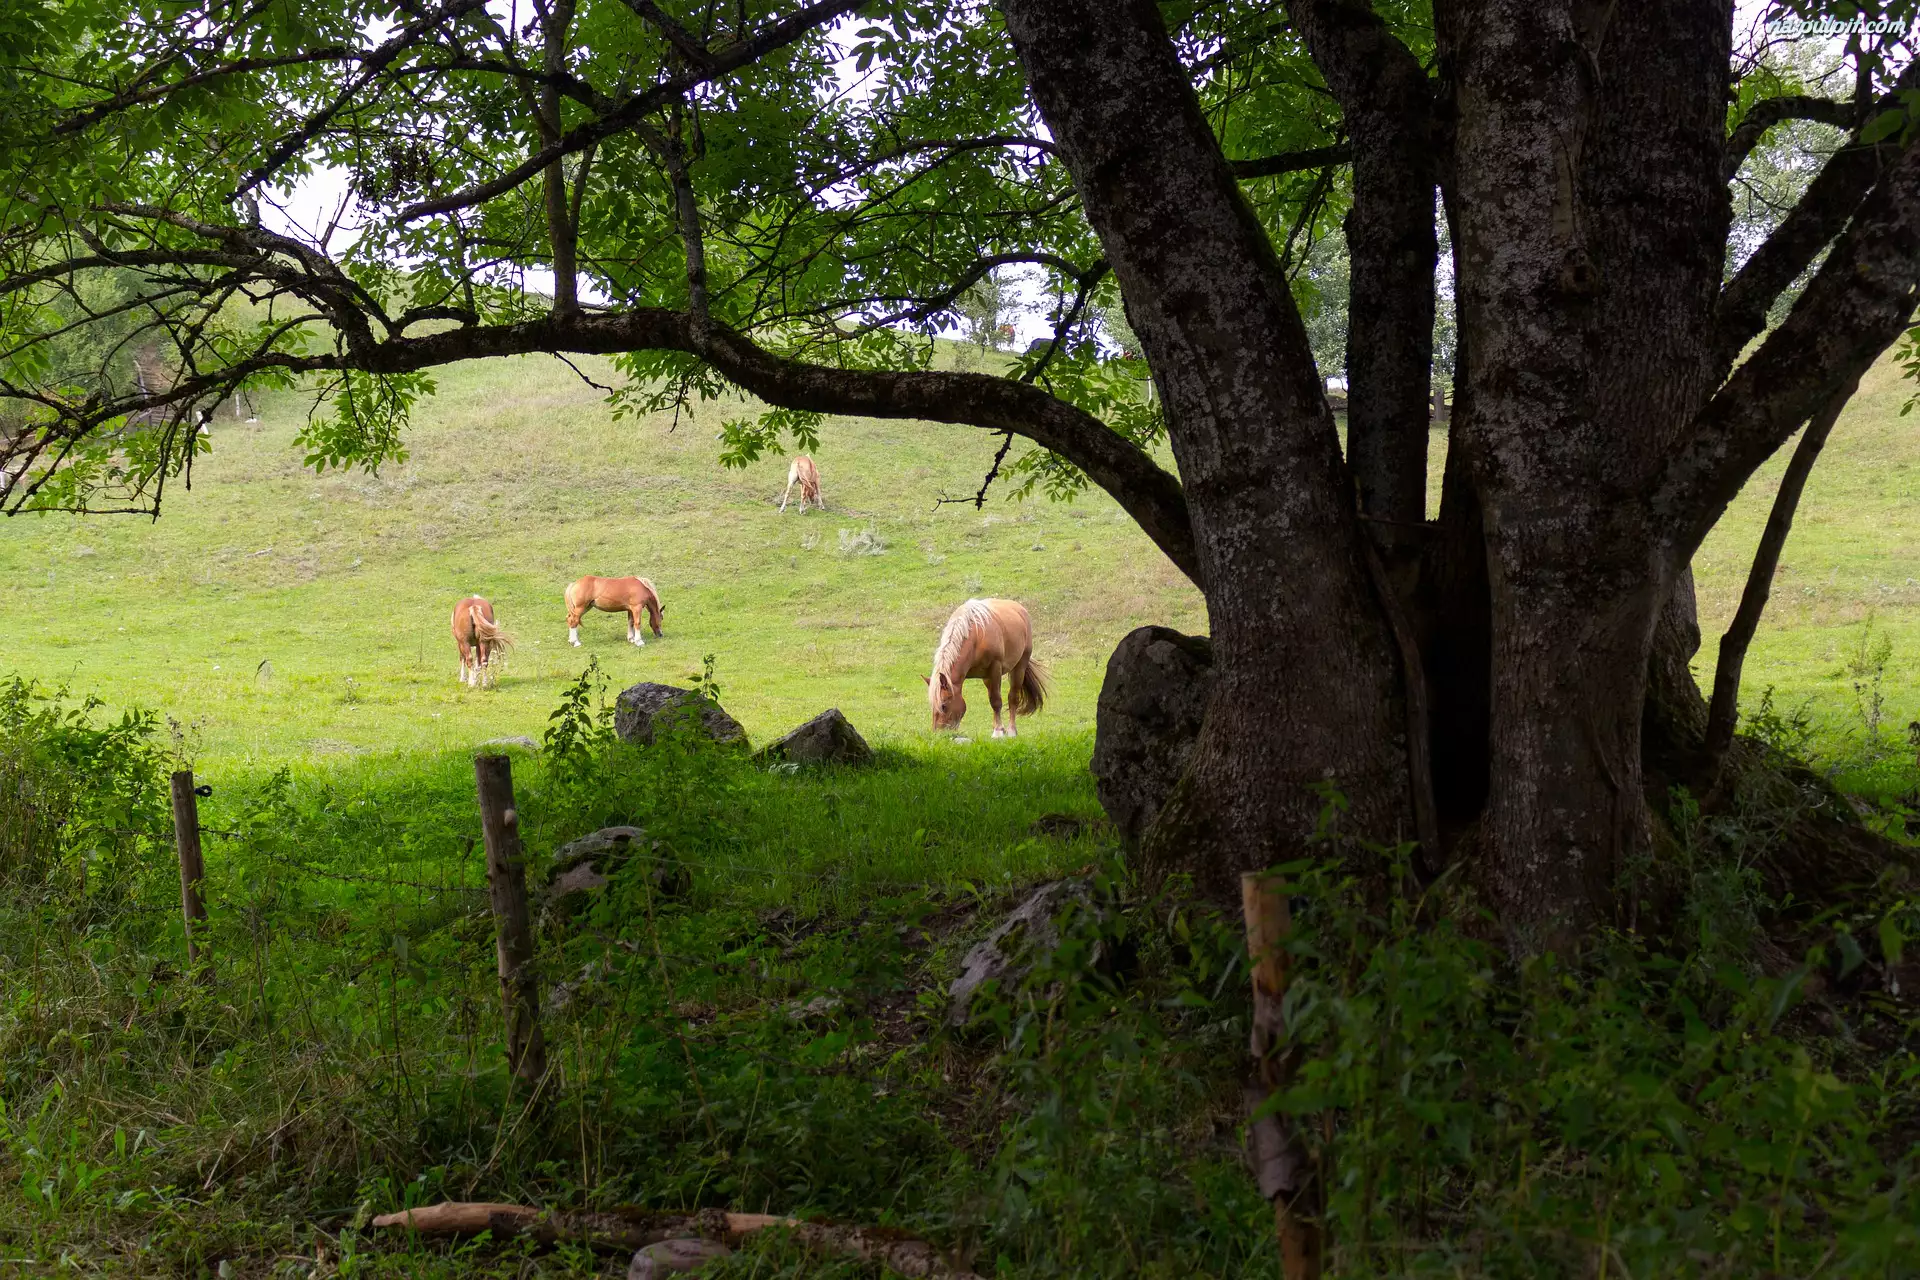 Ogrodzenie, Konie, Pastwisko, Drzewo